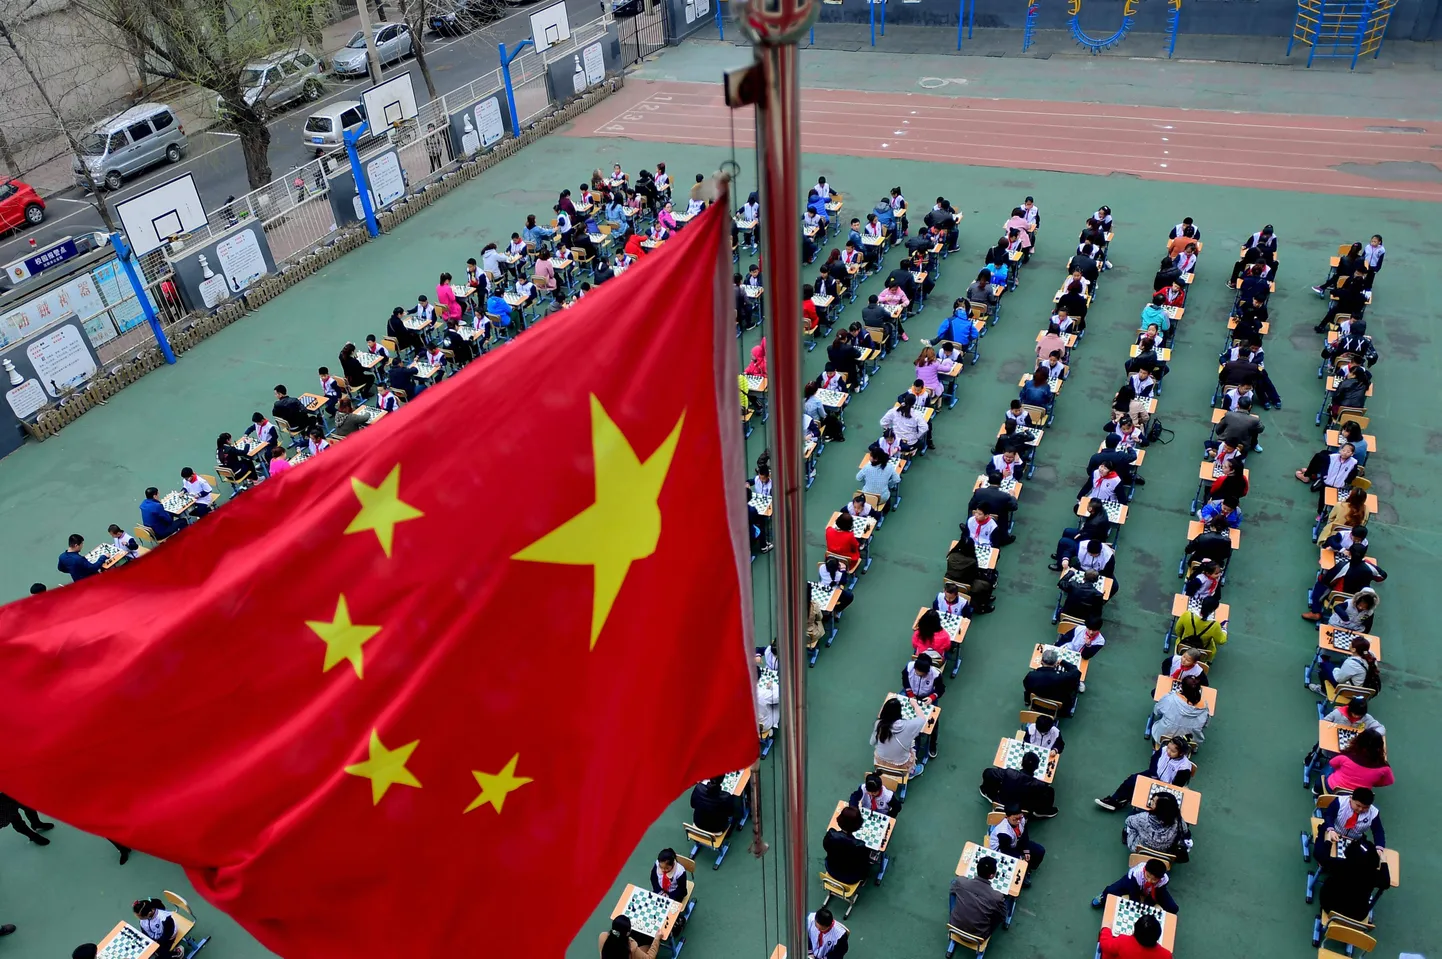 Hiina õpilased Liaoningi maleturniiril. Foto on illustratiivne.